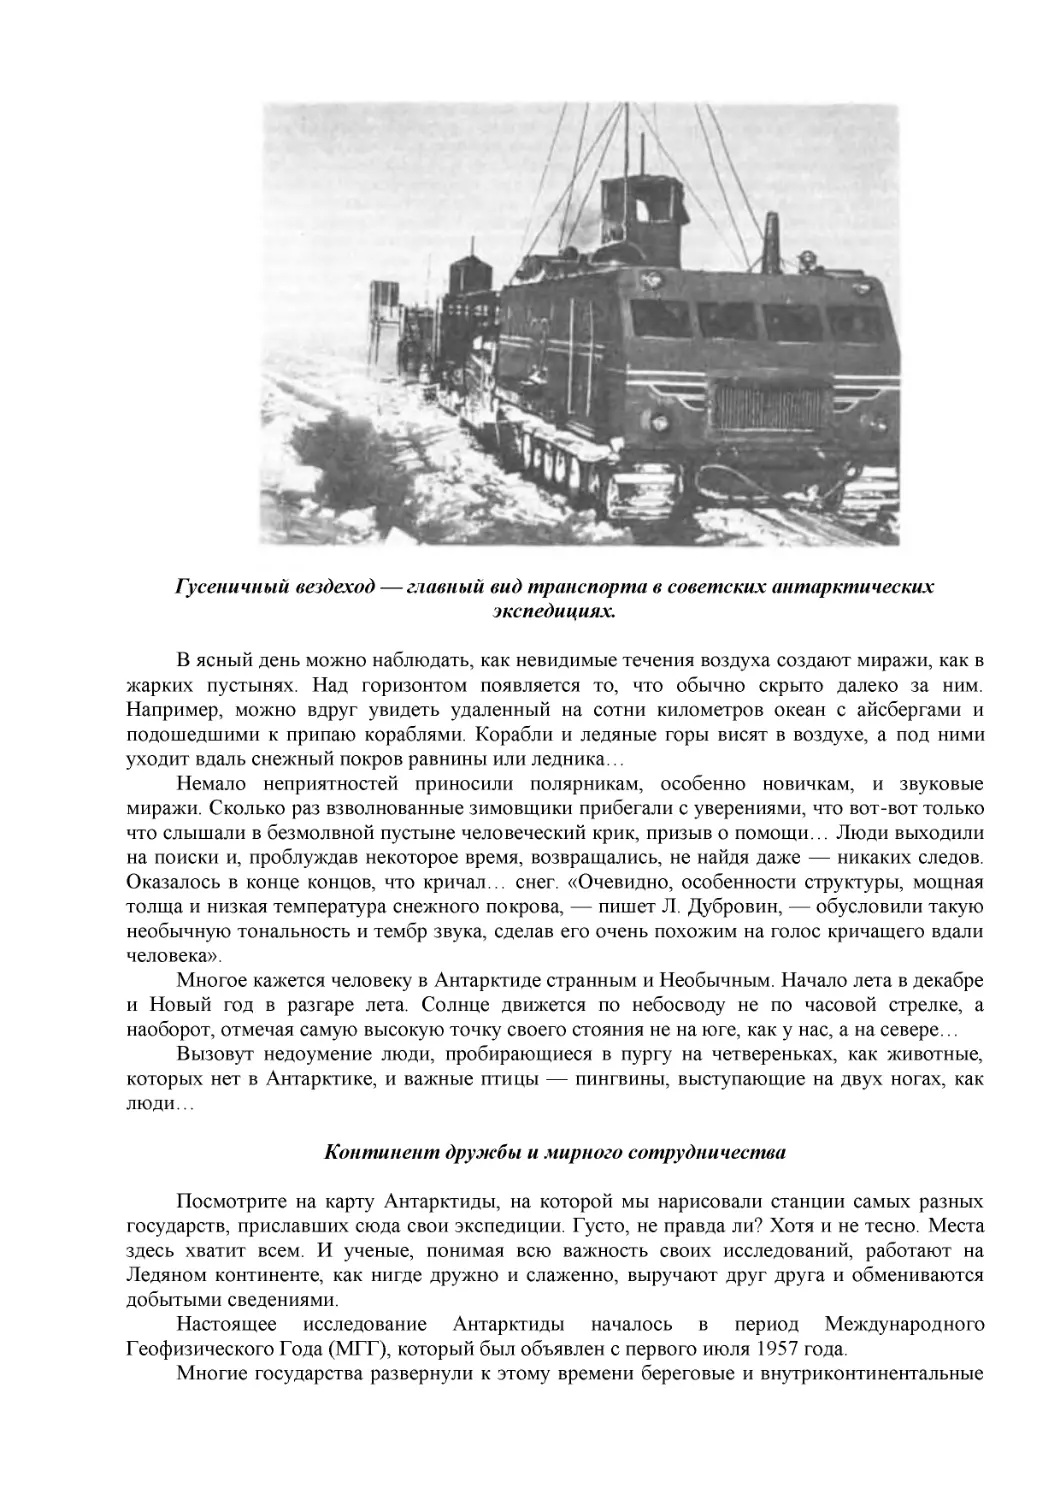 Гусеничный вездеход — главный вид транспорта в советских антарктических экспедициях.
Континент дружбы и мирного сотрудничества